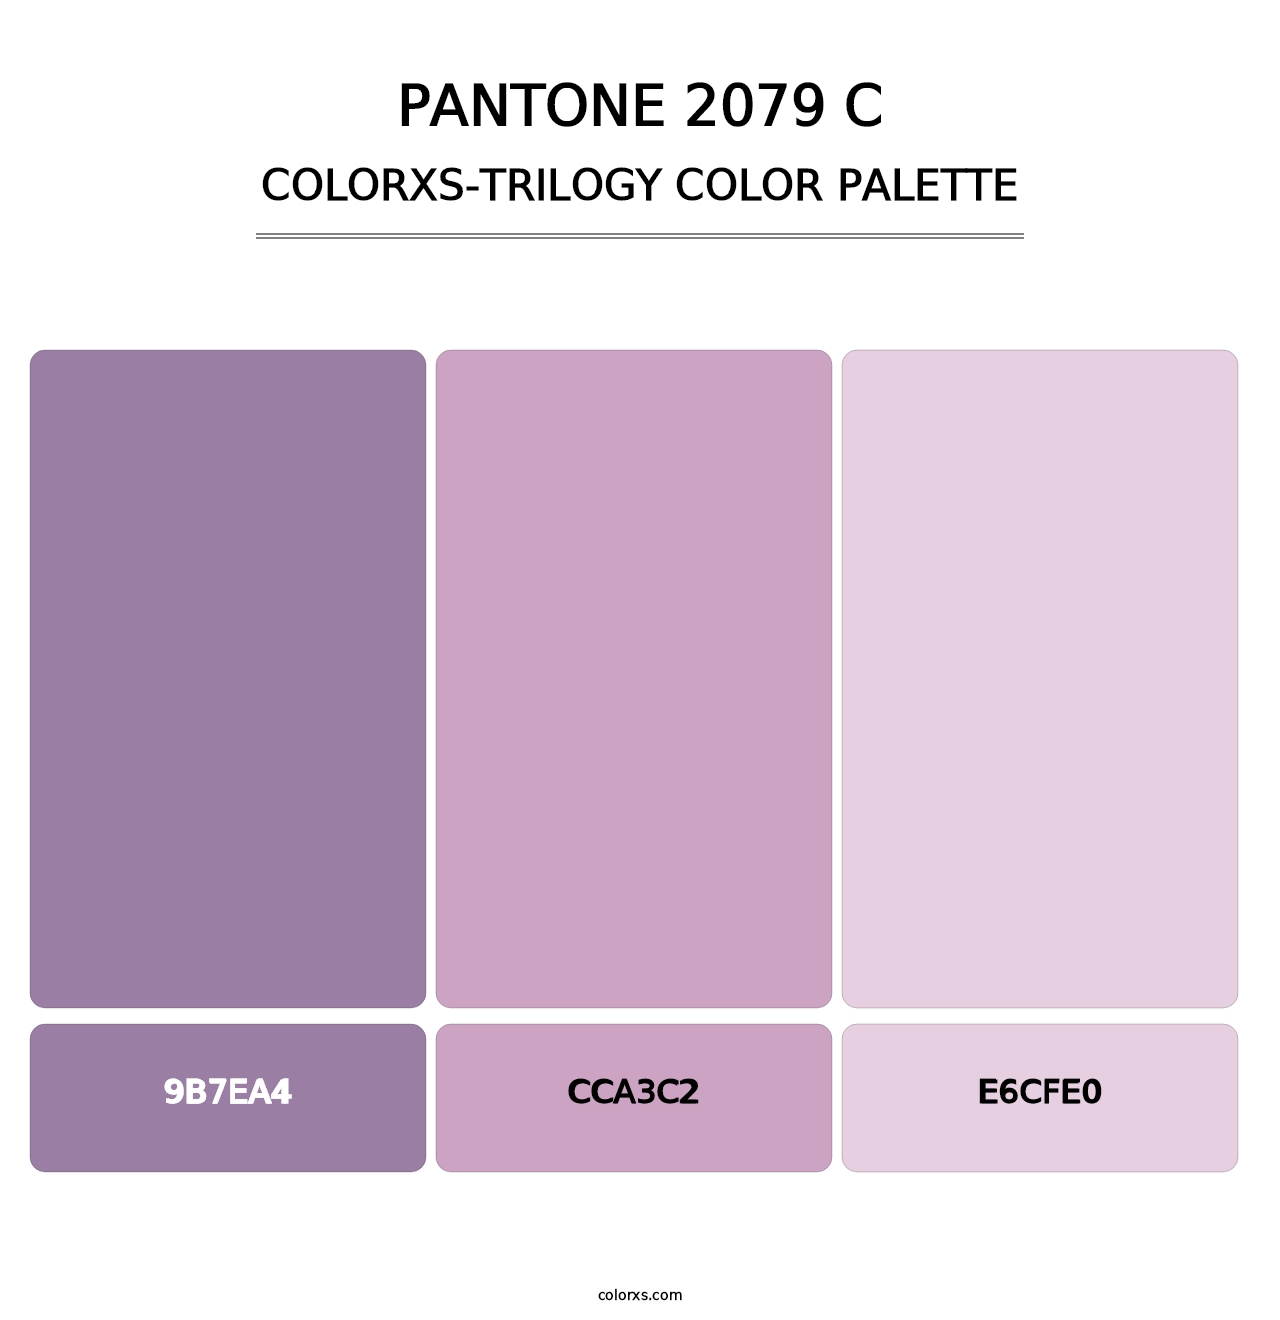 PANTONE 2079 C - Colorxs Trilogy Palette